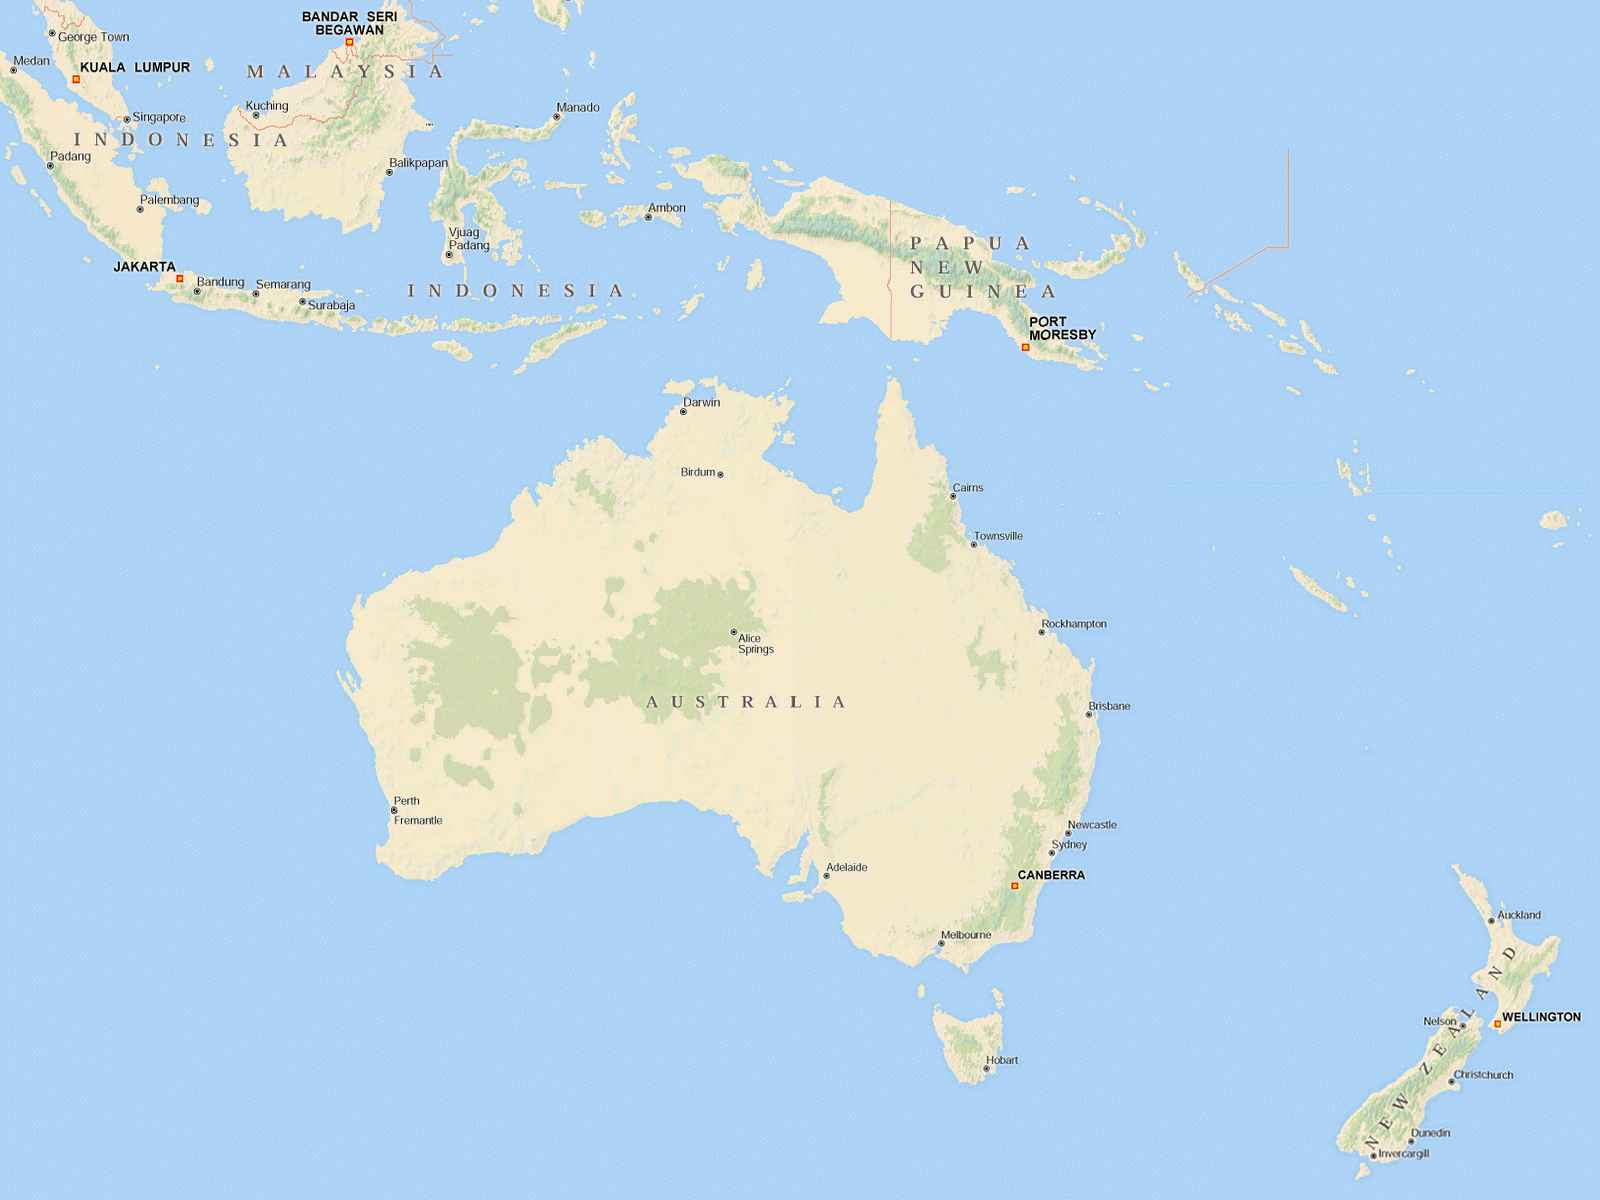 Map of NZ/OZ